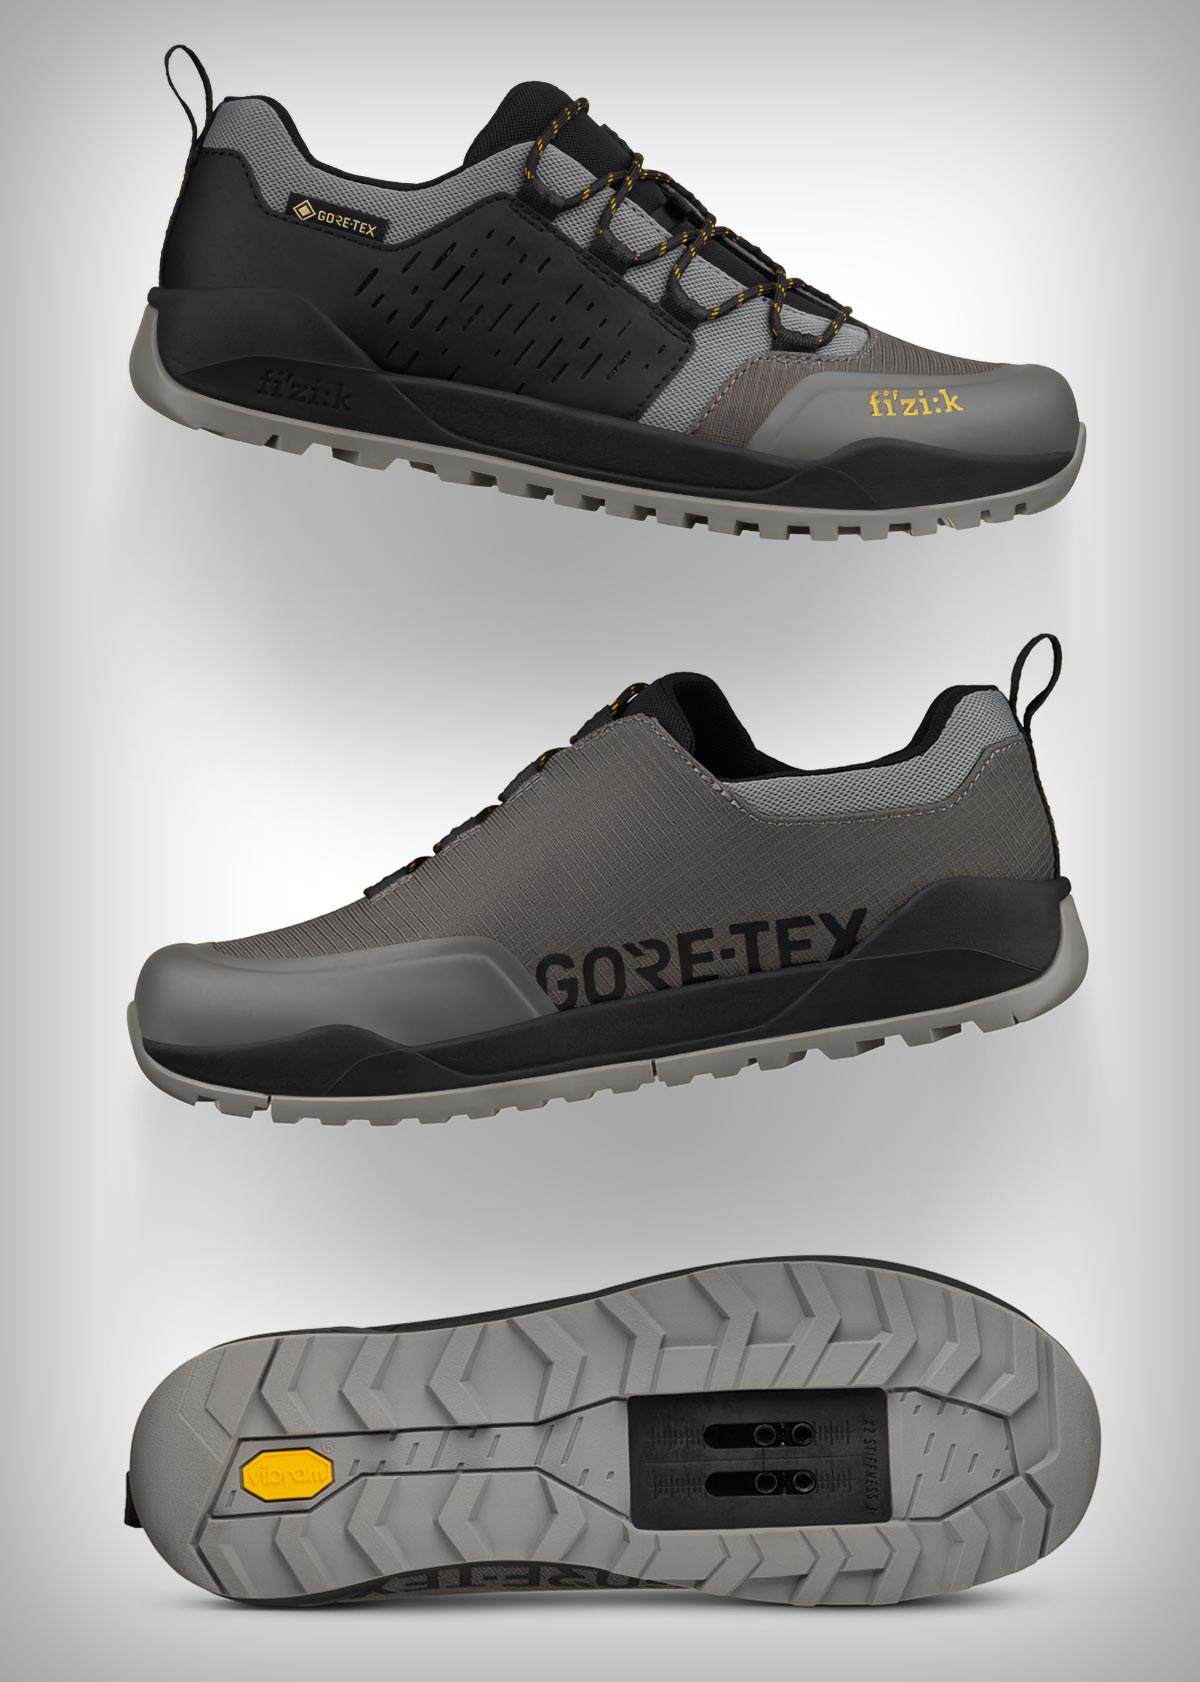 Fizik Terra Ergolace GTX, unas resistentes zapatillas a prueba de tormentas para ciclistas y senderistas